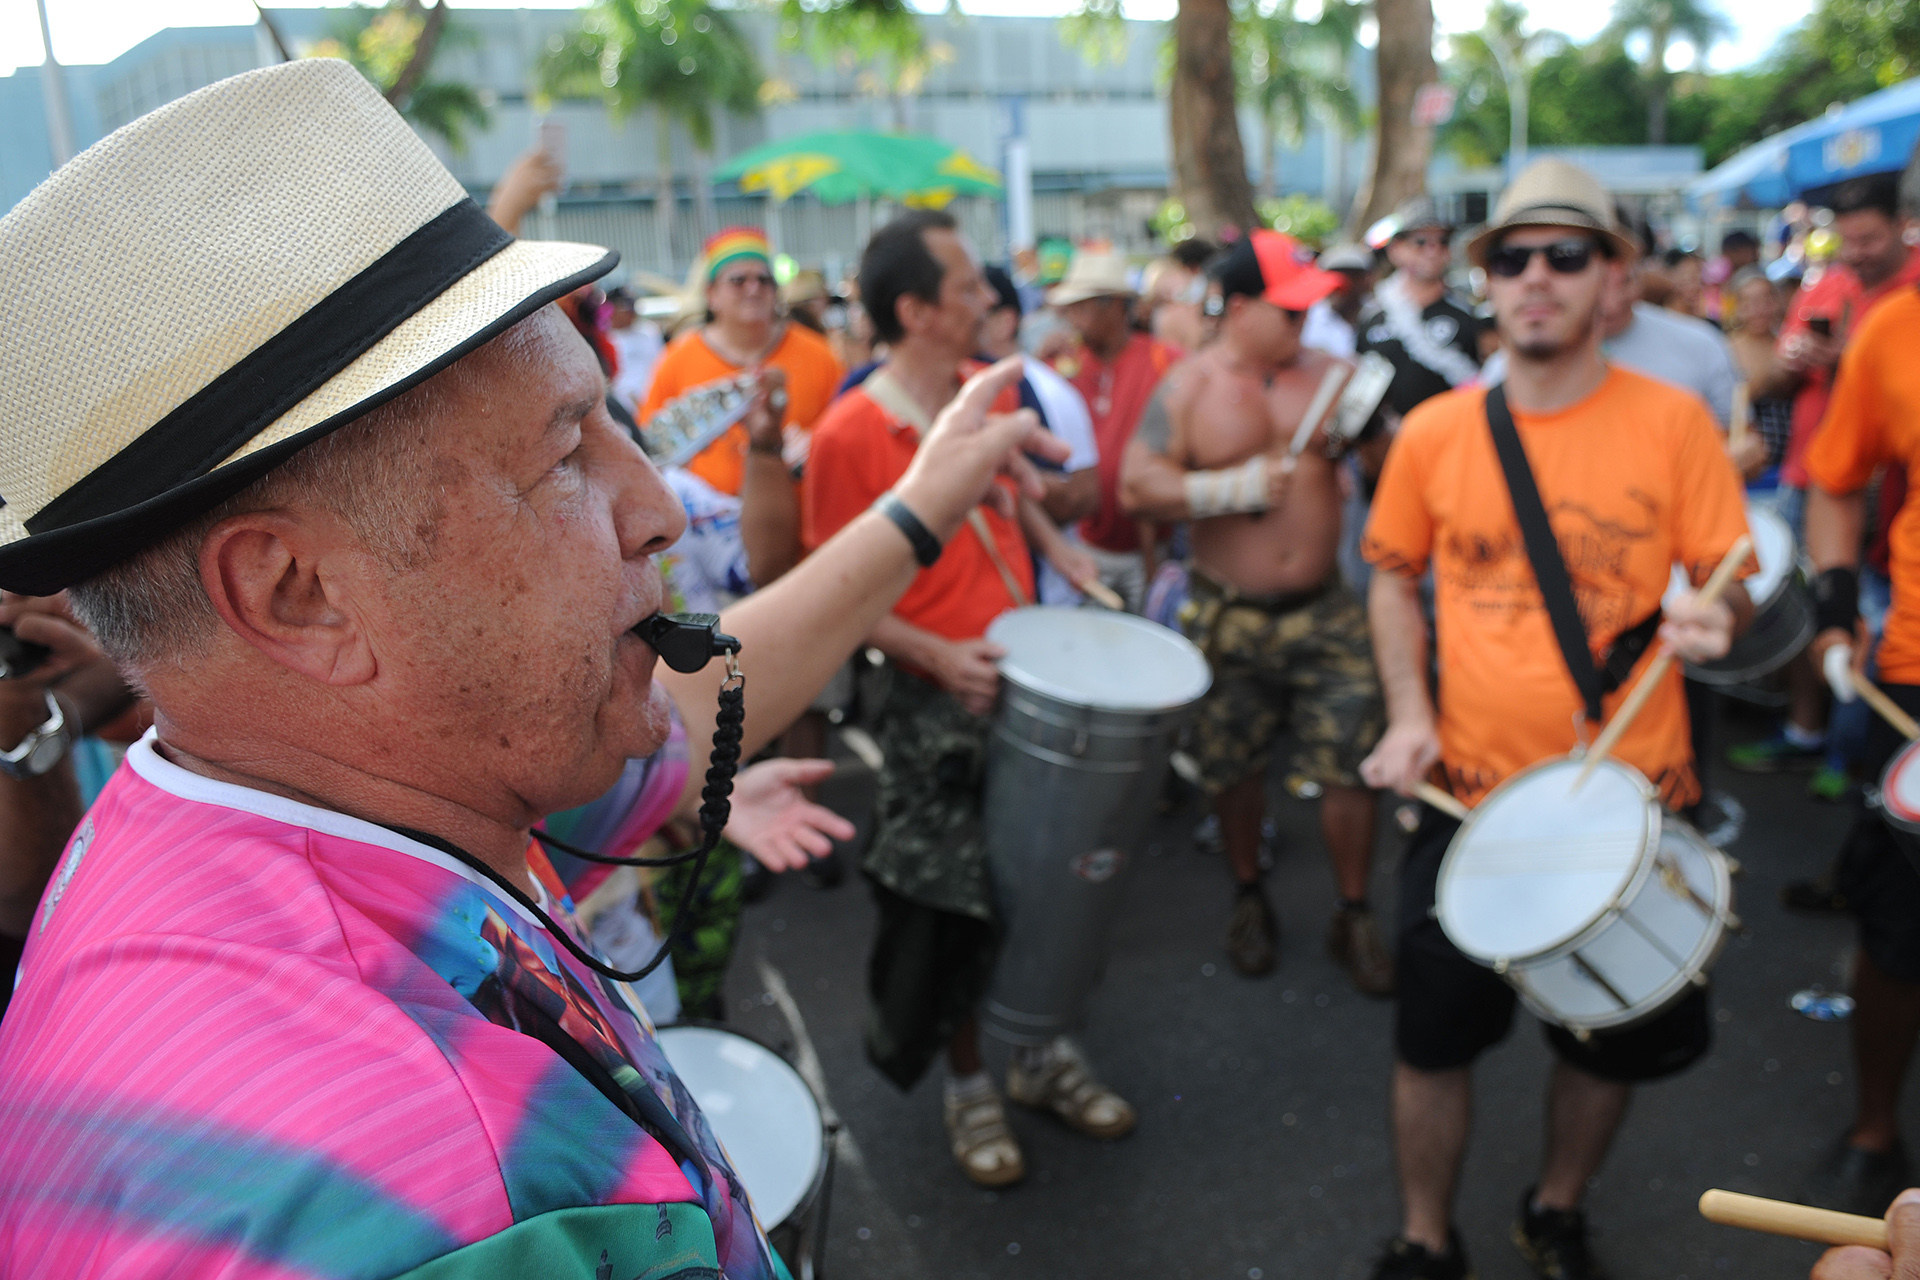 Bloco Pacotão em seu segundo desfile no carnaval de Brasília em 2017